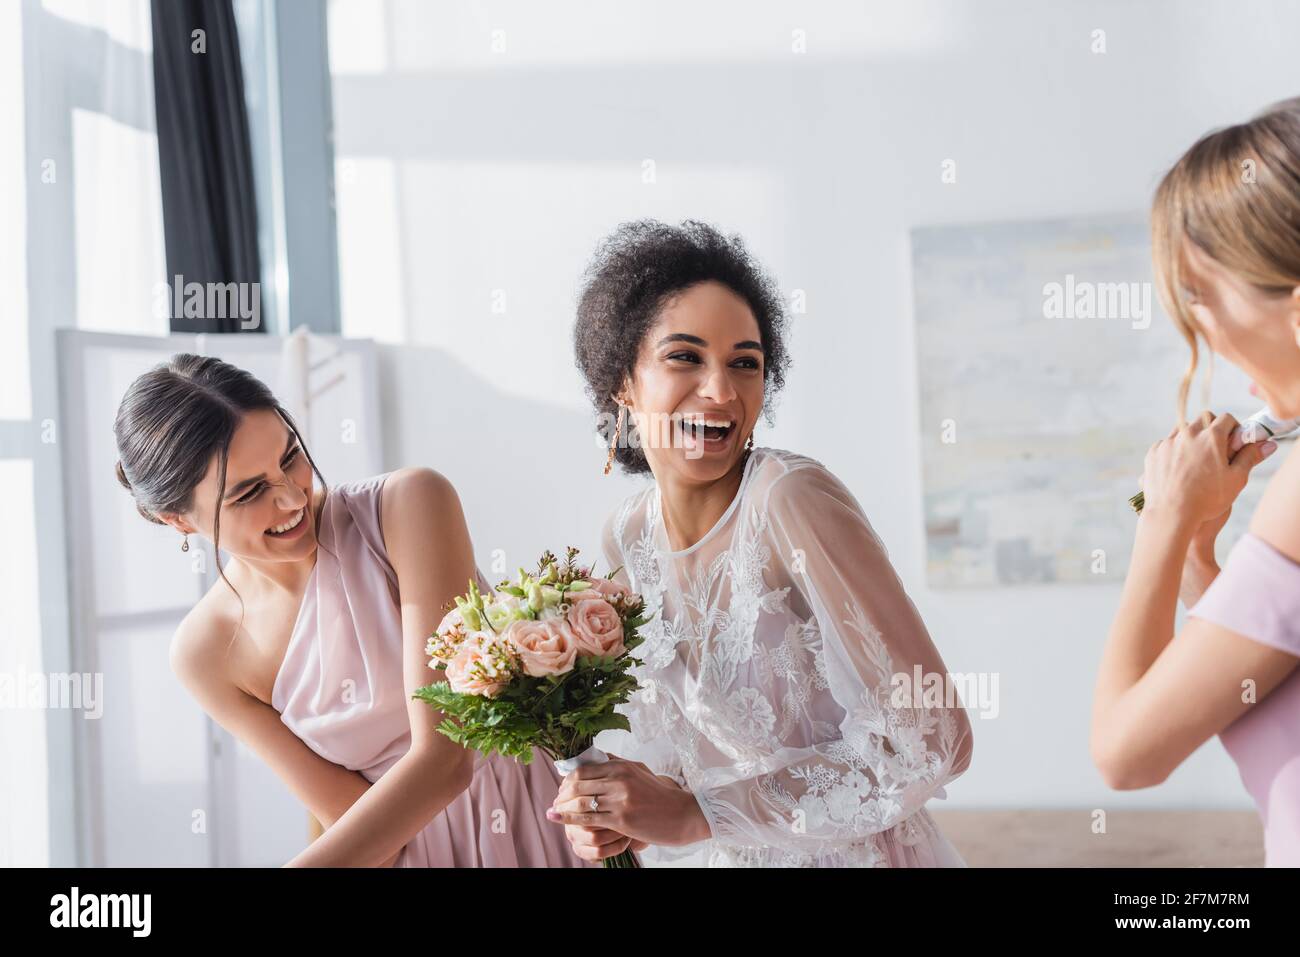 bride afroamericana eccitata che tiene il bouquet di nozze e ridendo vicino bridesmaid Foto Stock